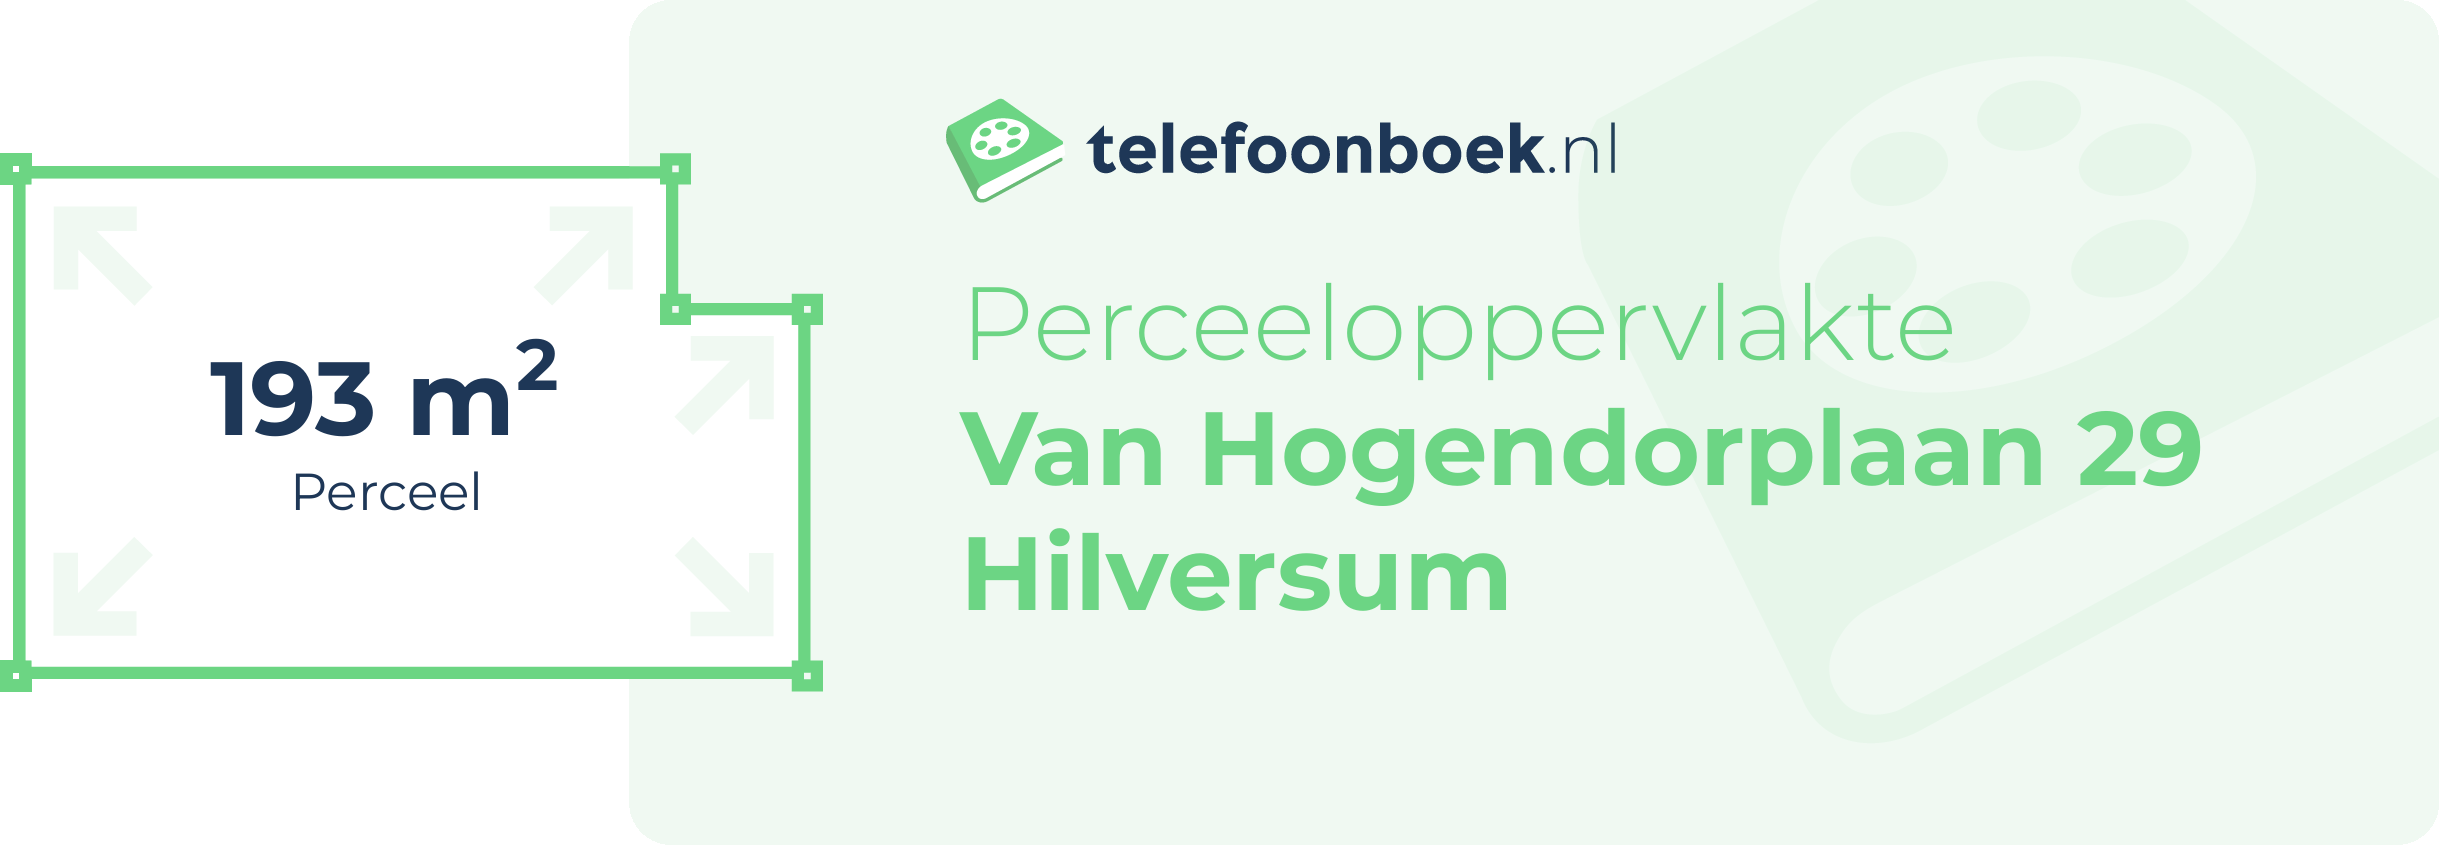 Perceeloppervlakte Van Hogendorplaan 29 Hilversum